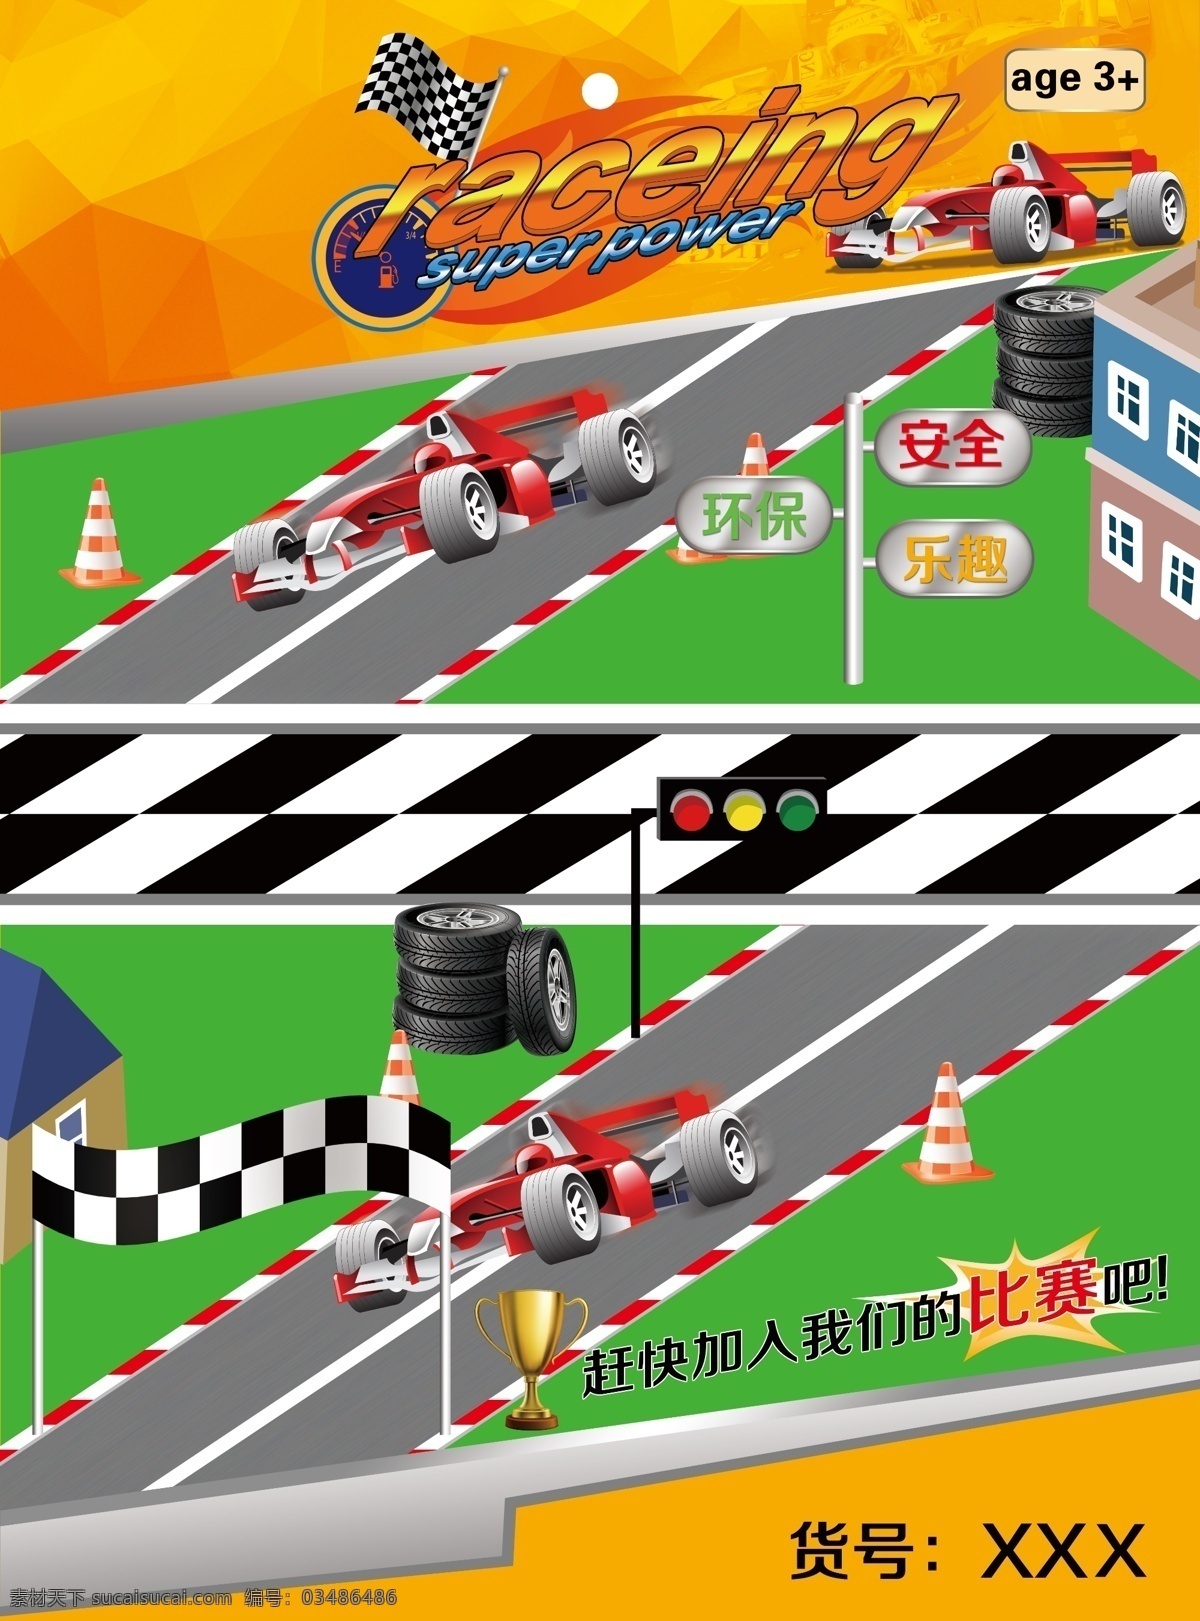 玩具赛车卡板 赛车 玩具卡板 安全 乐趣 环保 raceing 灰色